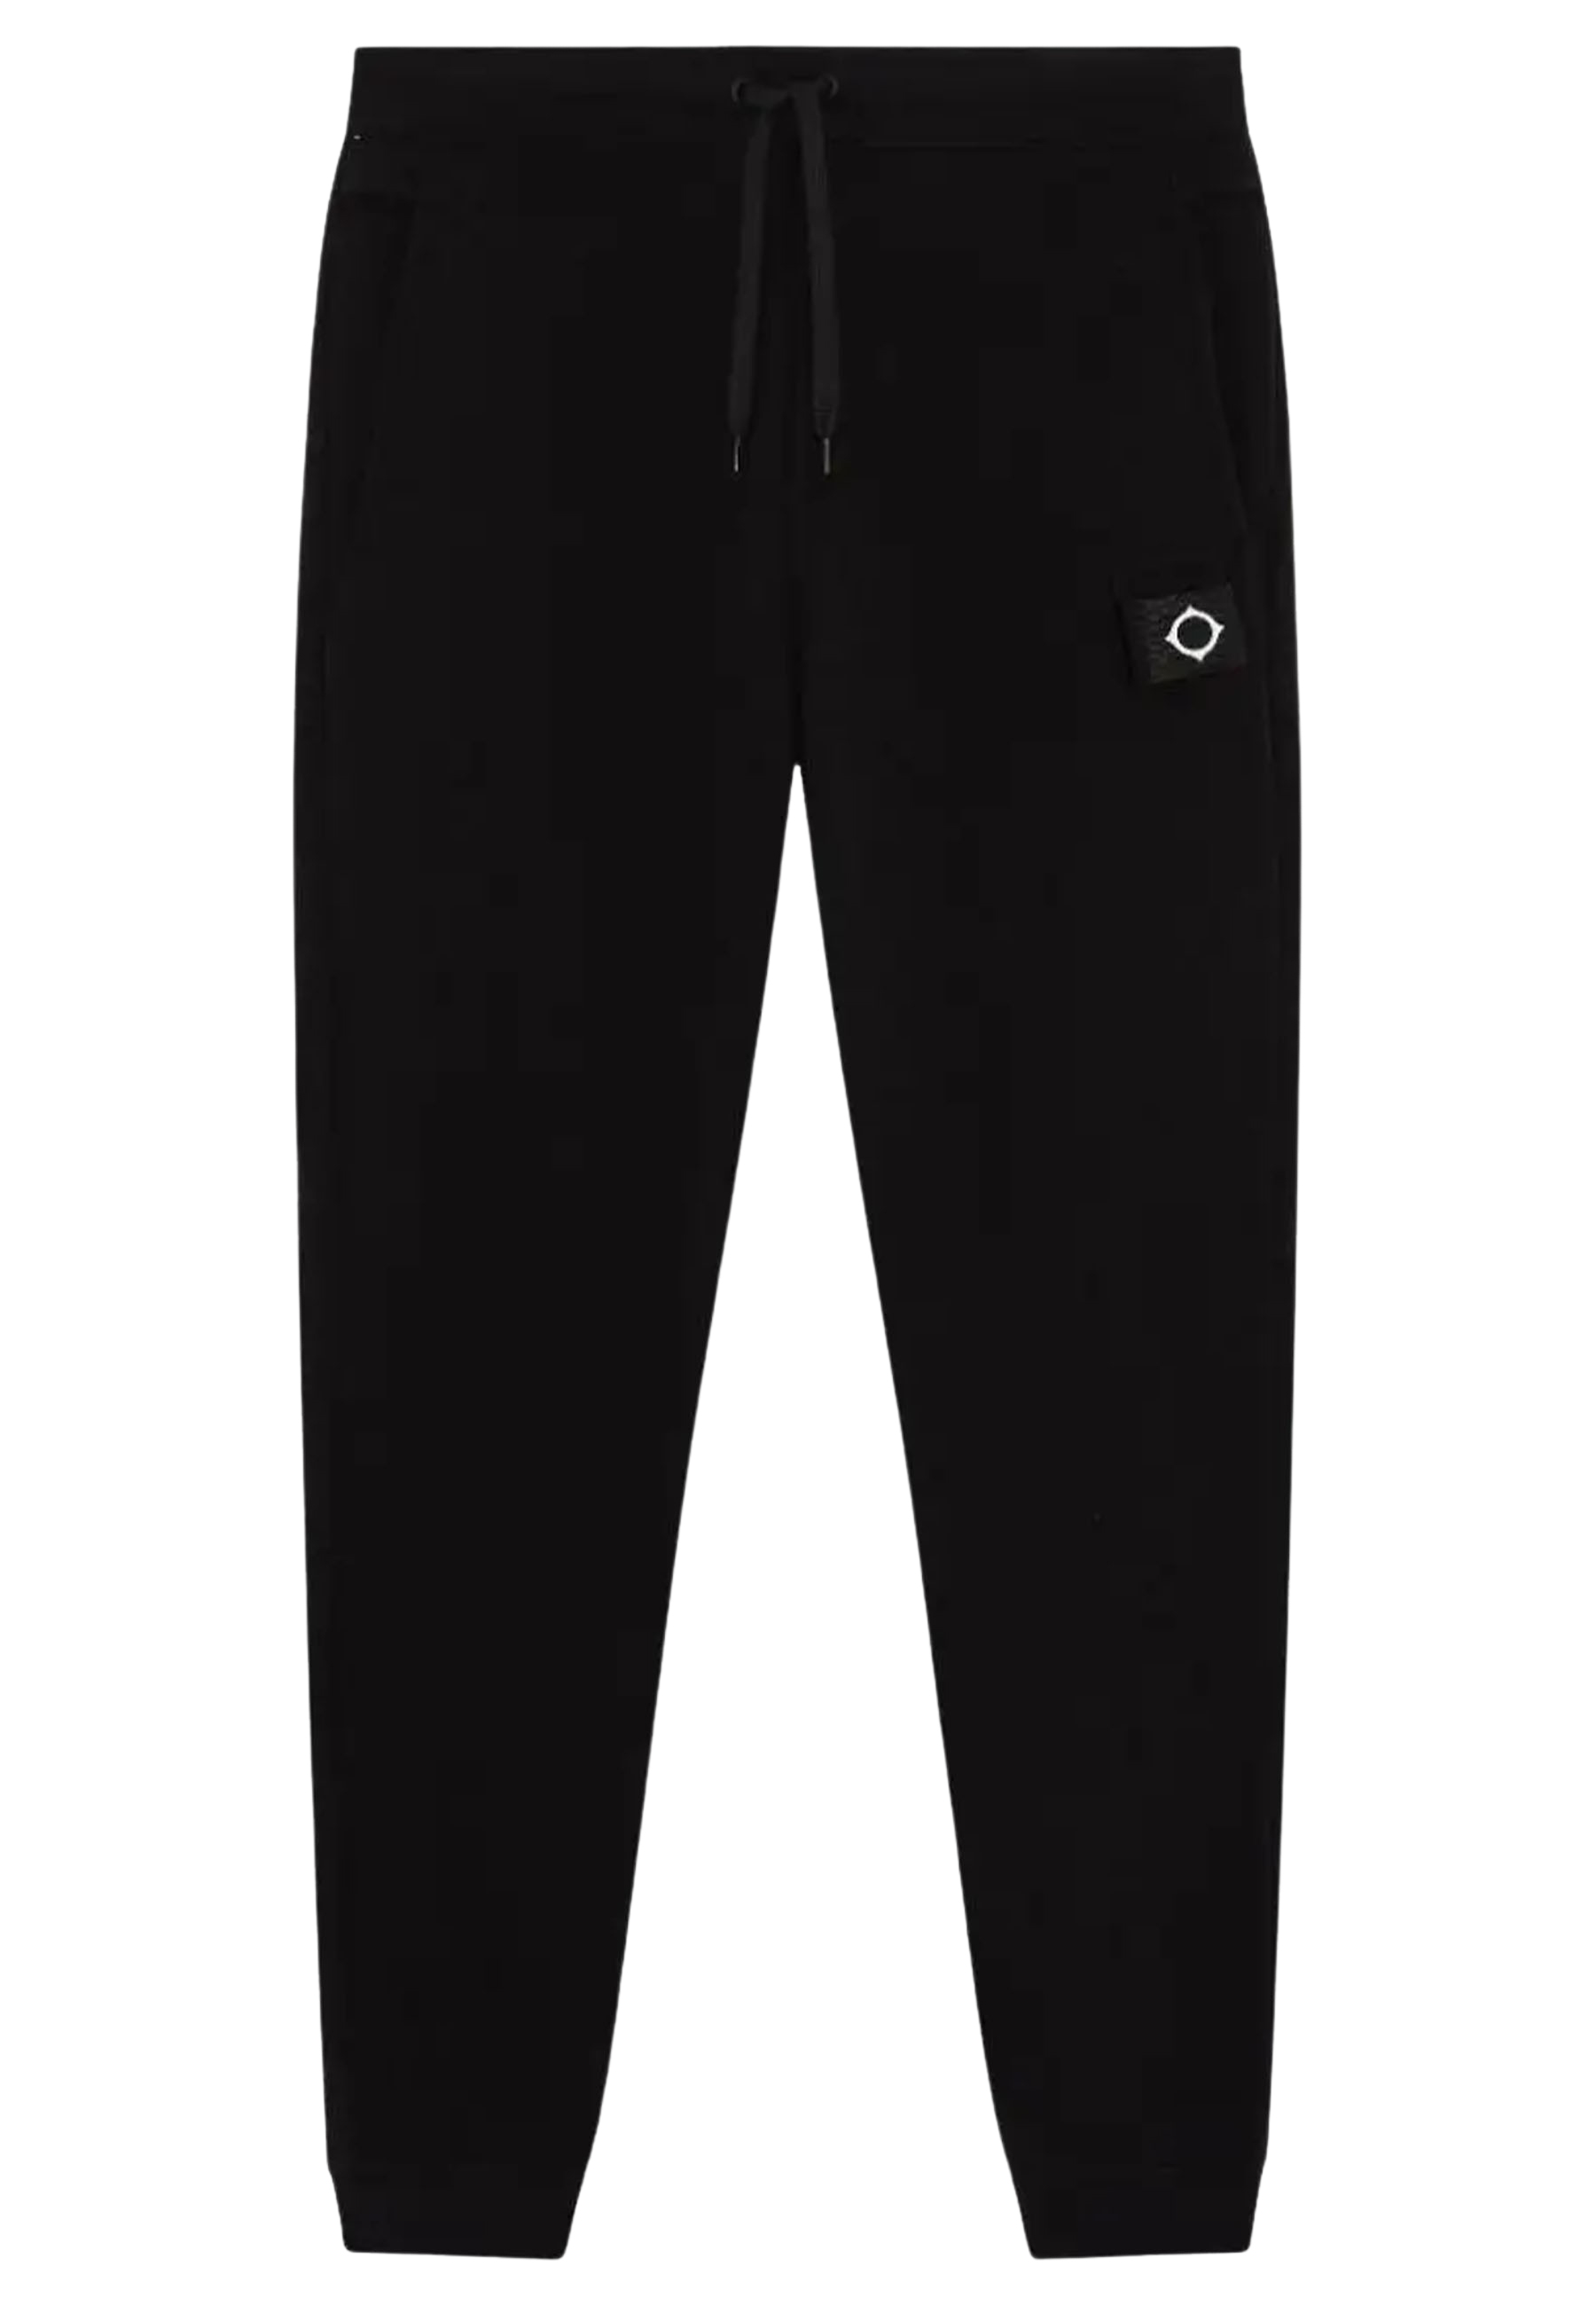 Mastrum Broek Zwart Katoen maat XL Core joggings broeken zwart